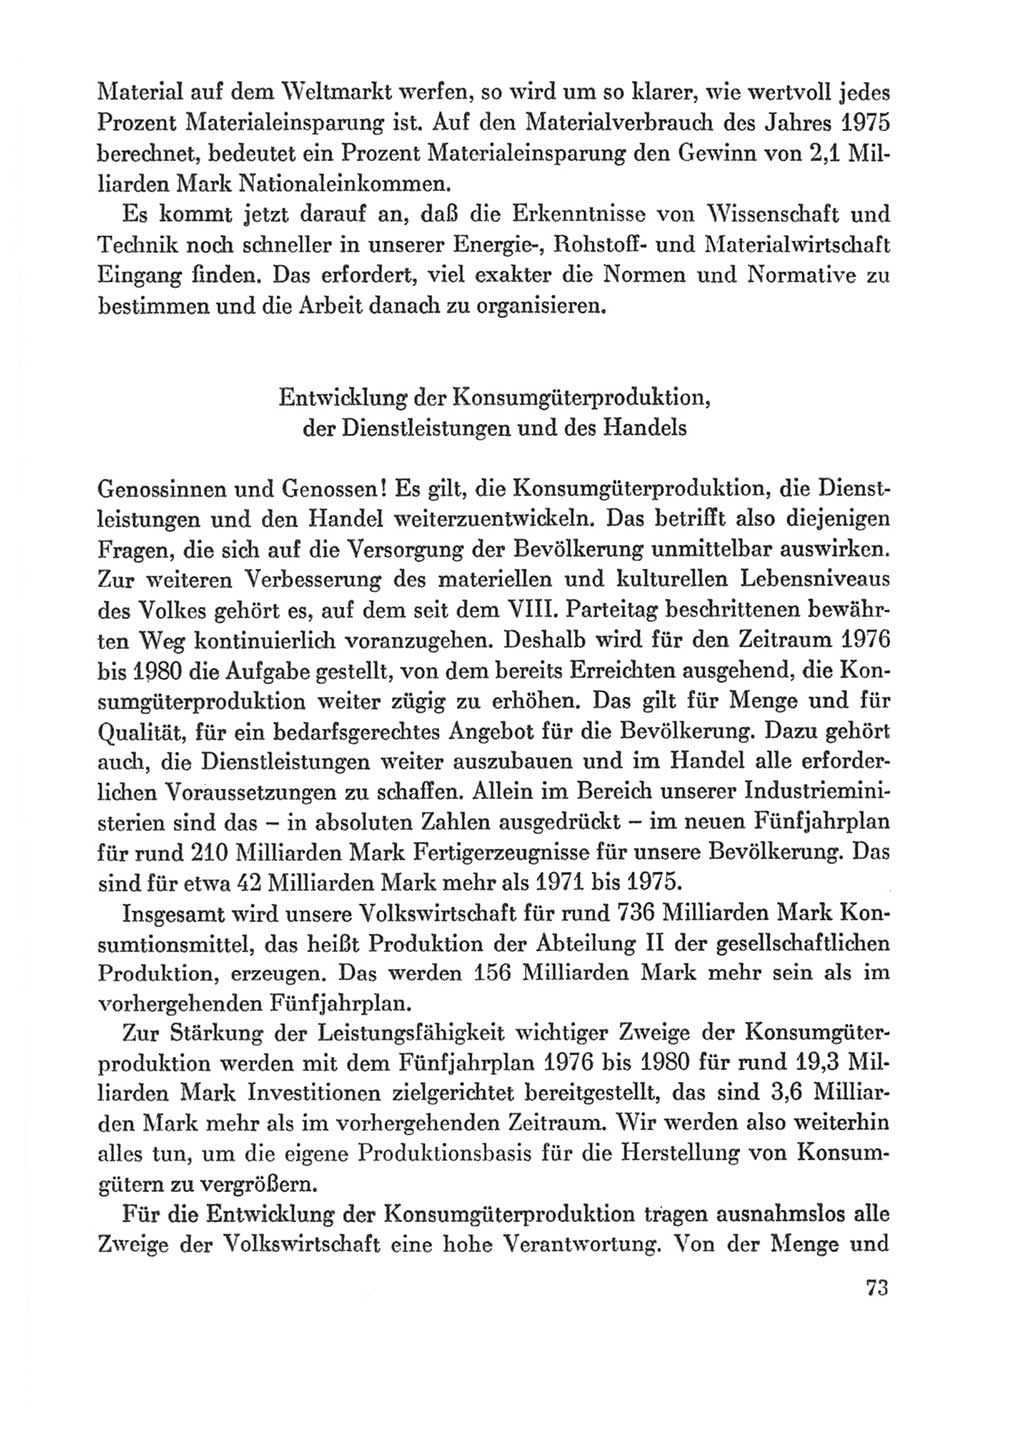 Protokoll der Verhandlungen des Ⅸ. Parteitages der Sozialistischen Einheitspartei Deutschlands (SED) [Deutsche Demokratische Republik (DDR)] 1976, Band 1, Seite 73 (Prot. Verh. Ⅸ. PT SED DDR 1976, Bd. 1, S. 73)